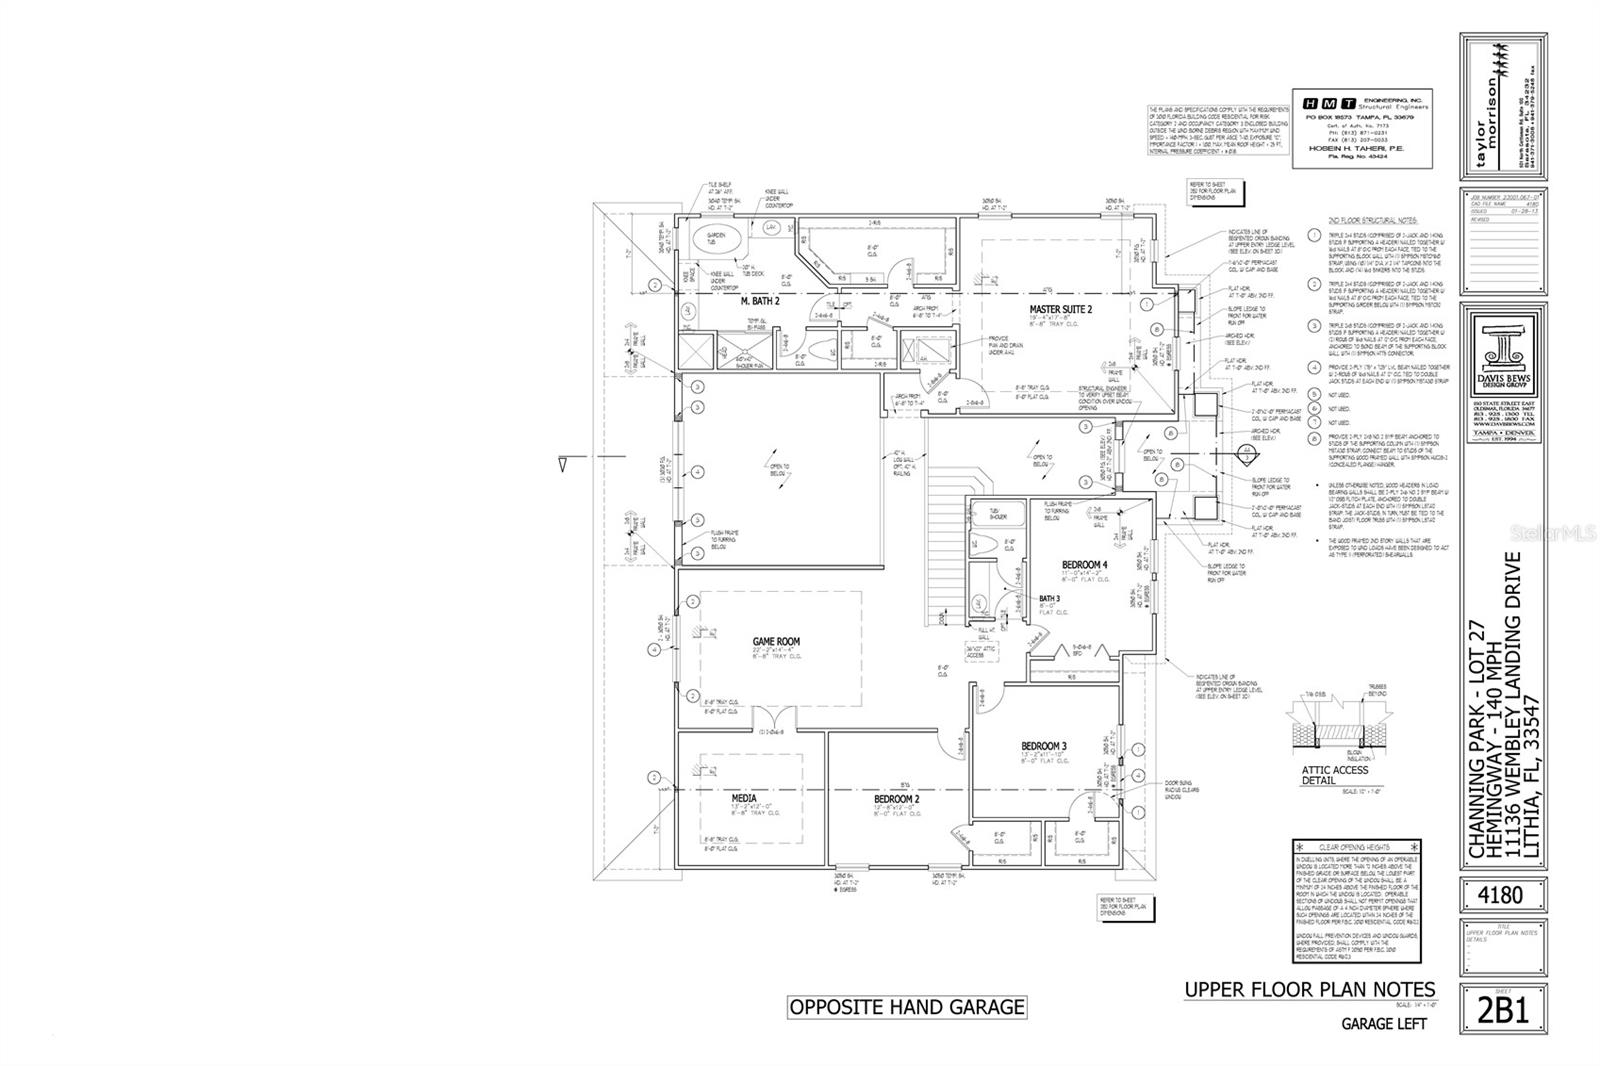 2nd Level Floor Plan (Reversed floor plan)